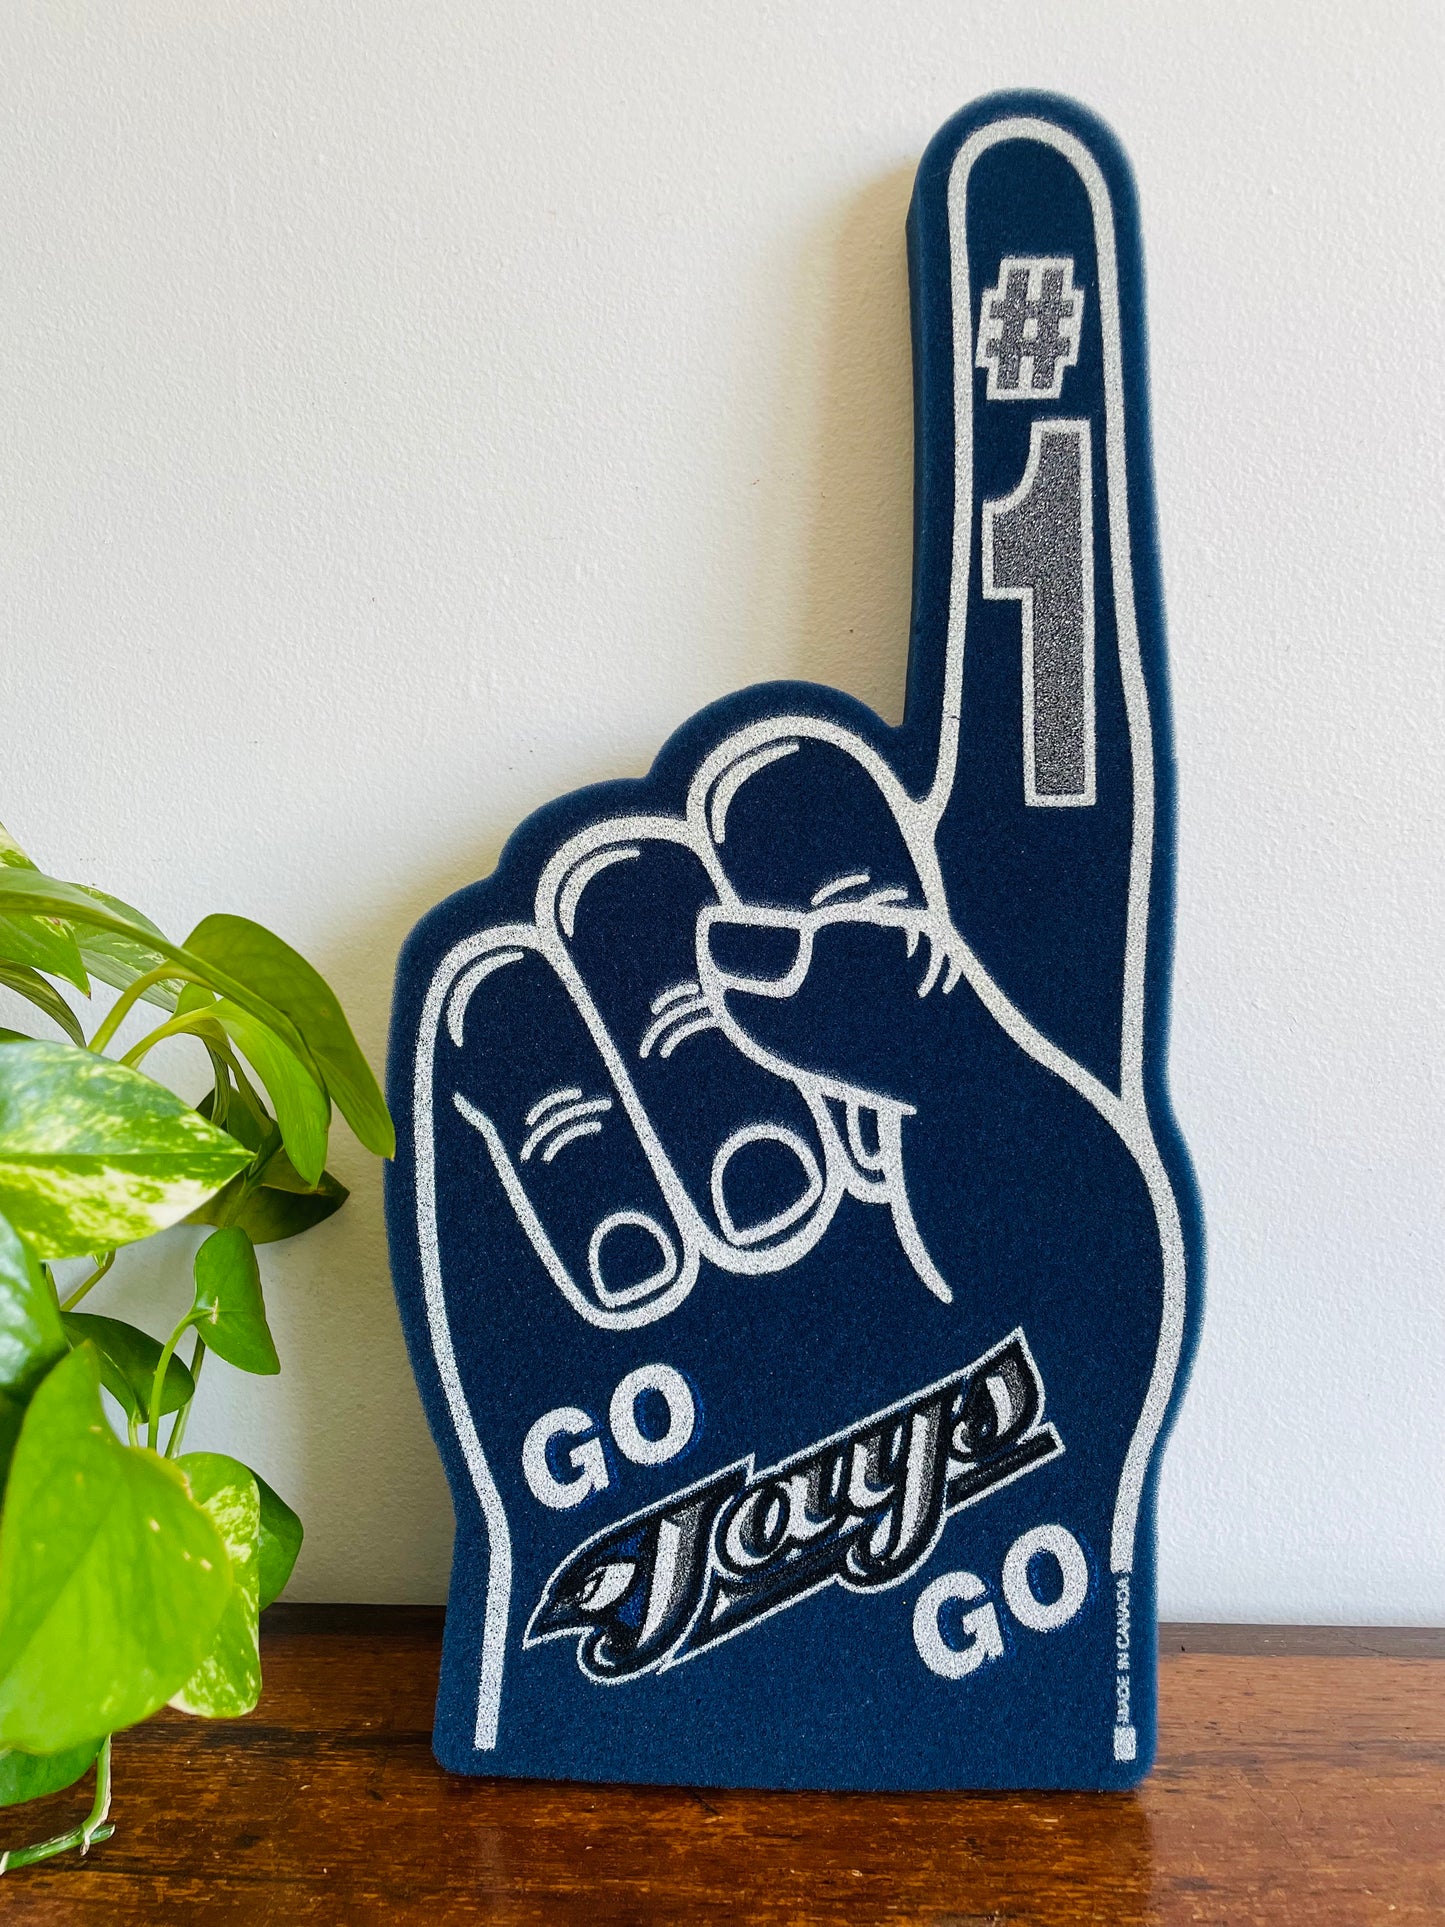 Go Jays Go # 1 - Toronto Blue Jays Giant Foam Finger Hand